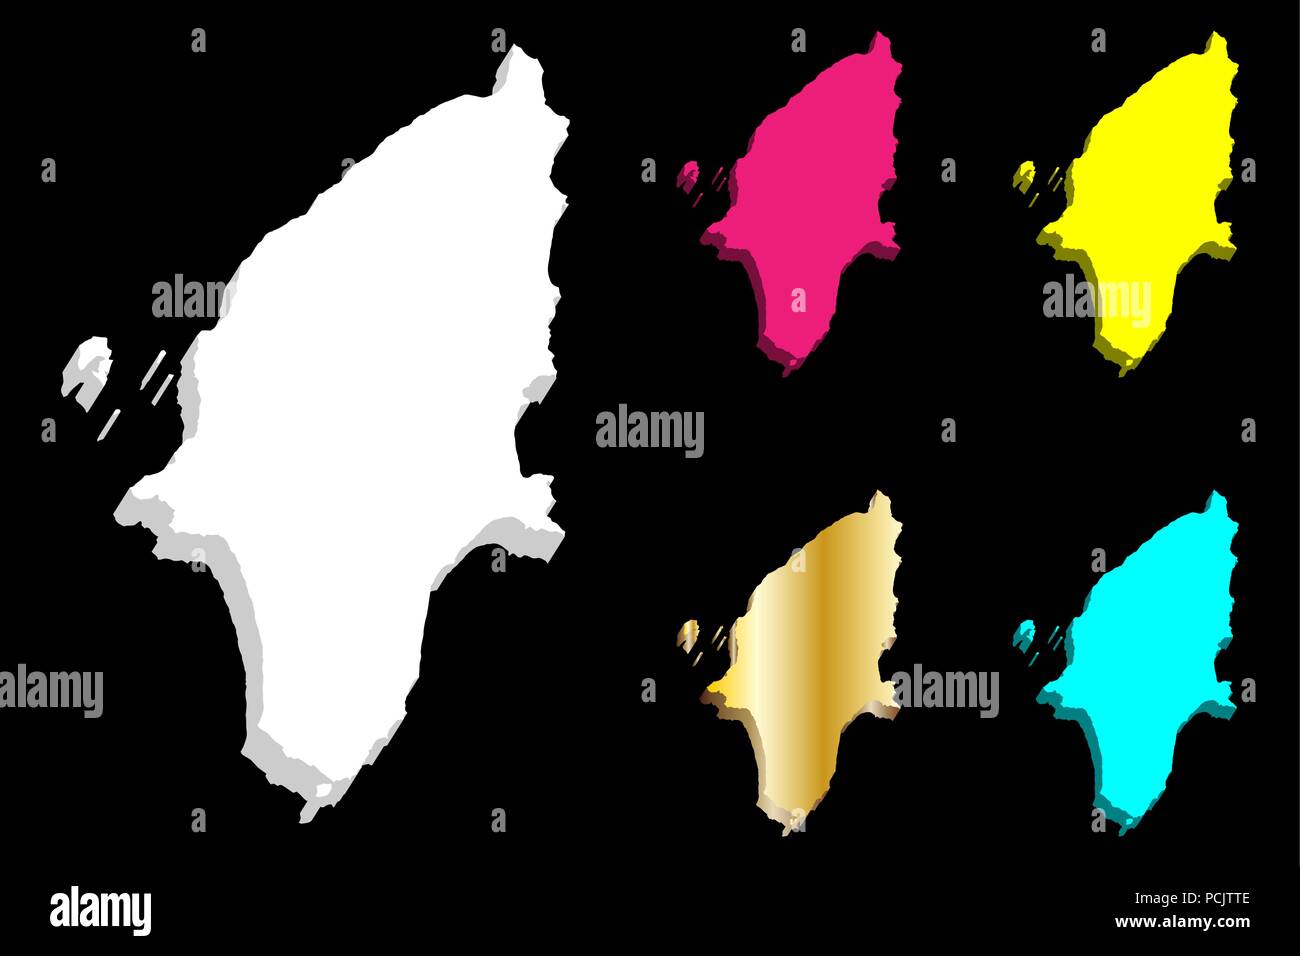 Mappa 3D di Rodi (isola della Grecia) - bianco, giallo, viola, blu e oro - illustrazione vettoriale Illustrazione Vettoriale